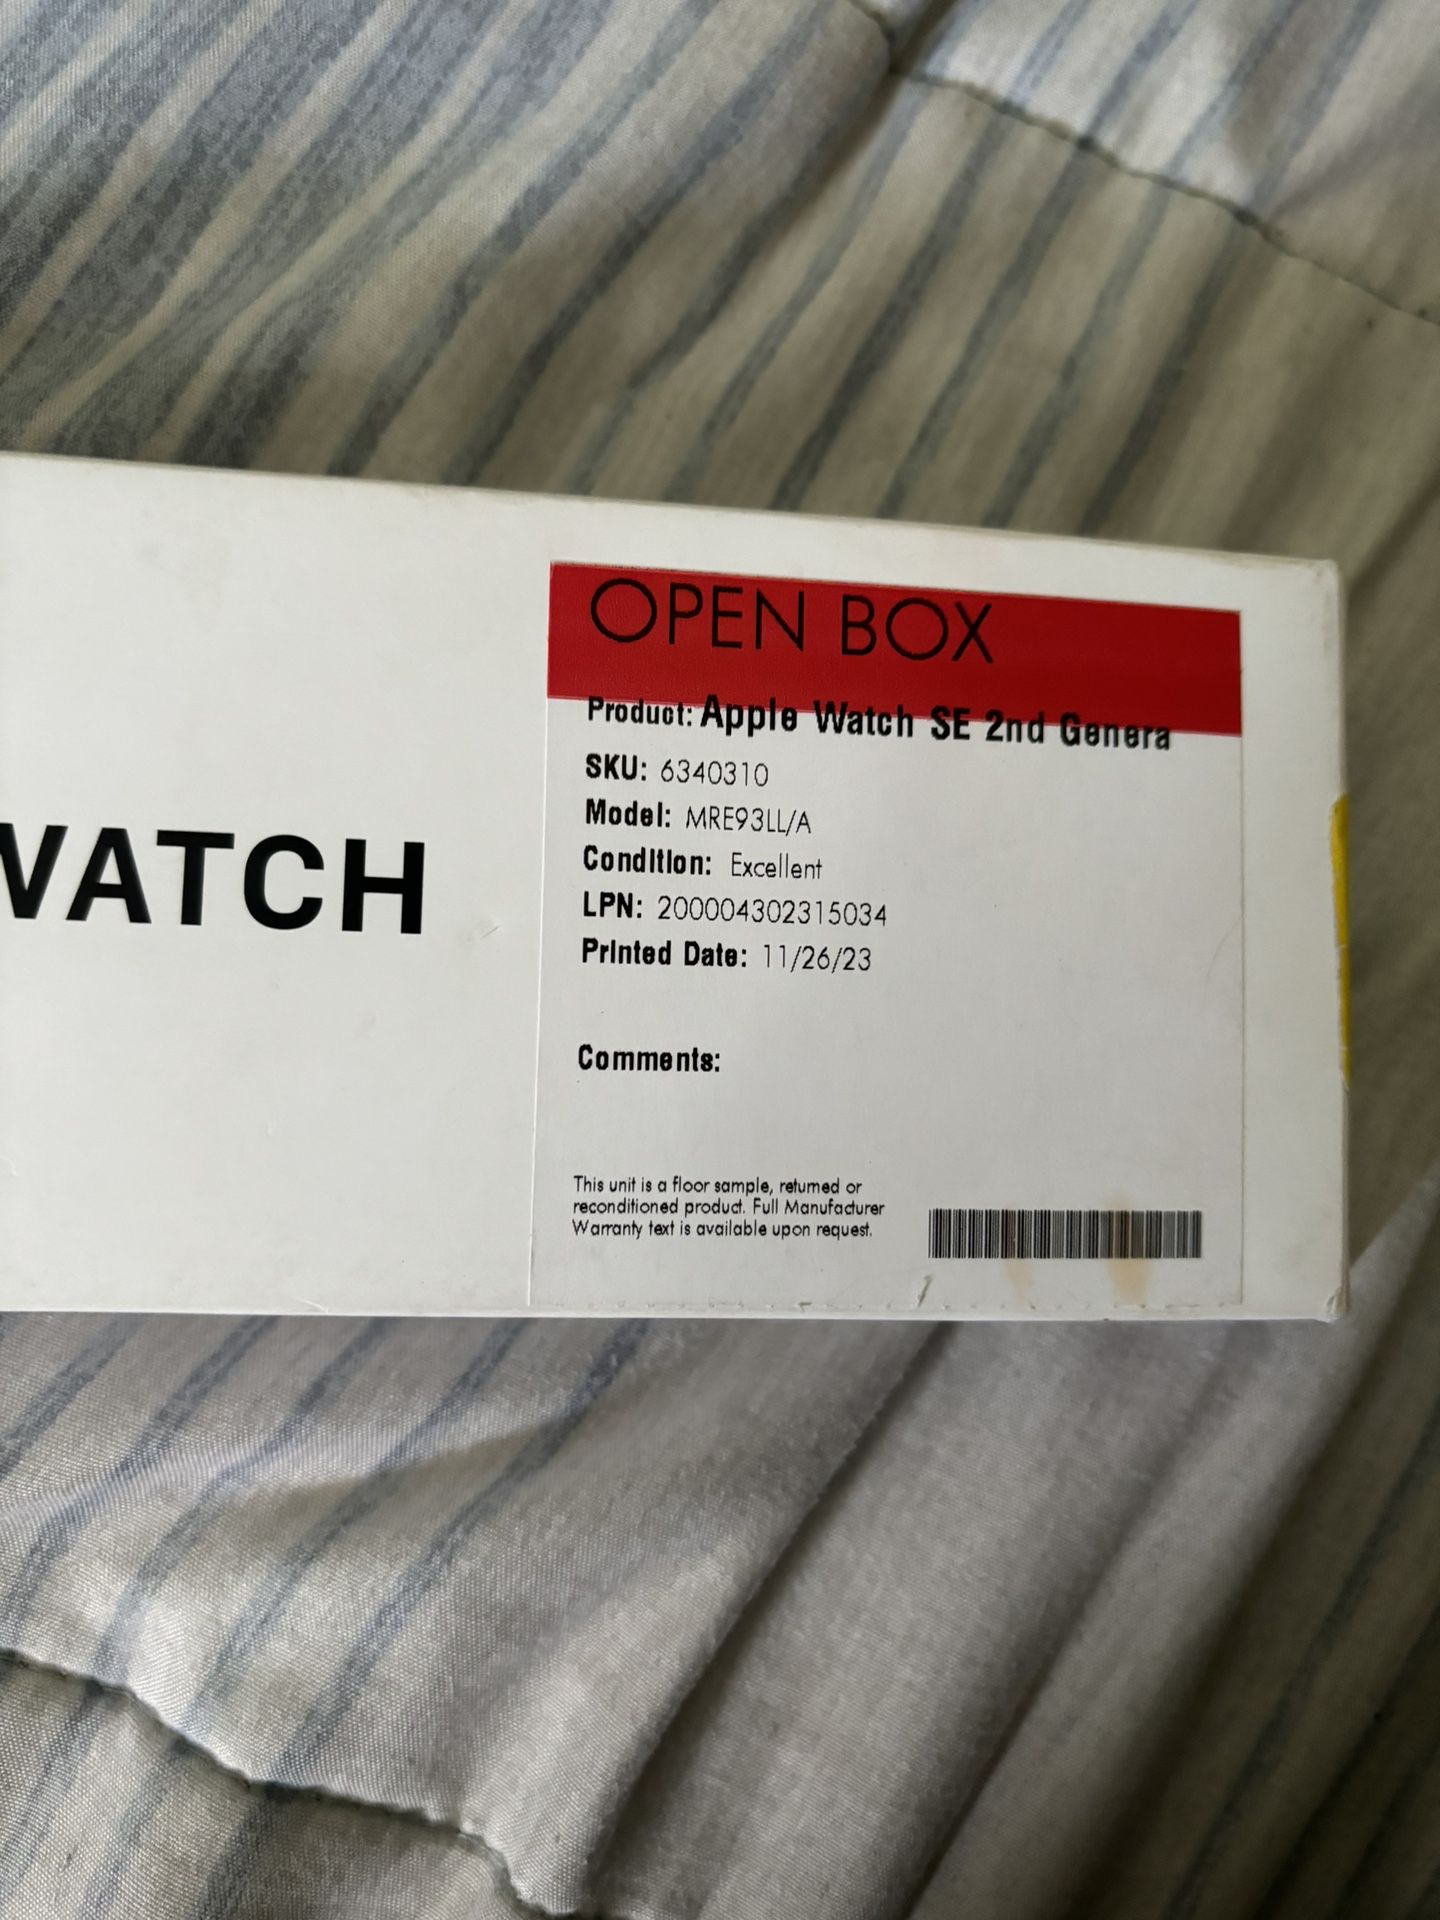 Apple Watch SE 2nd Gen 